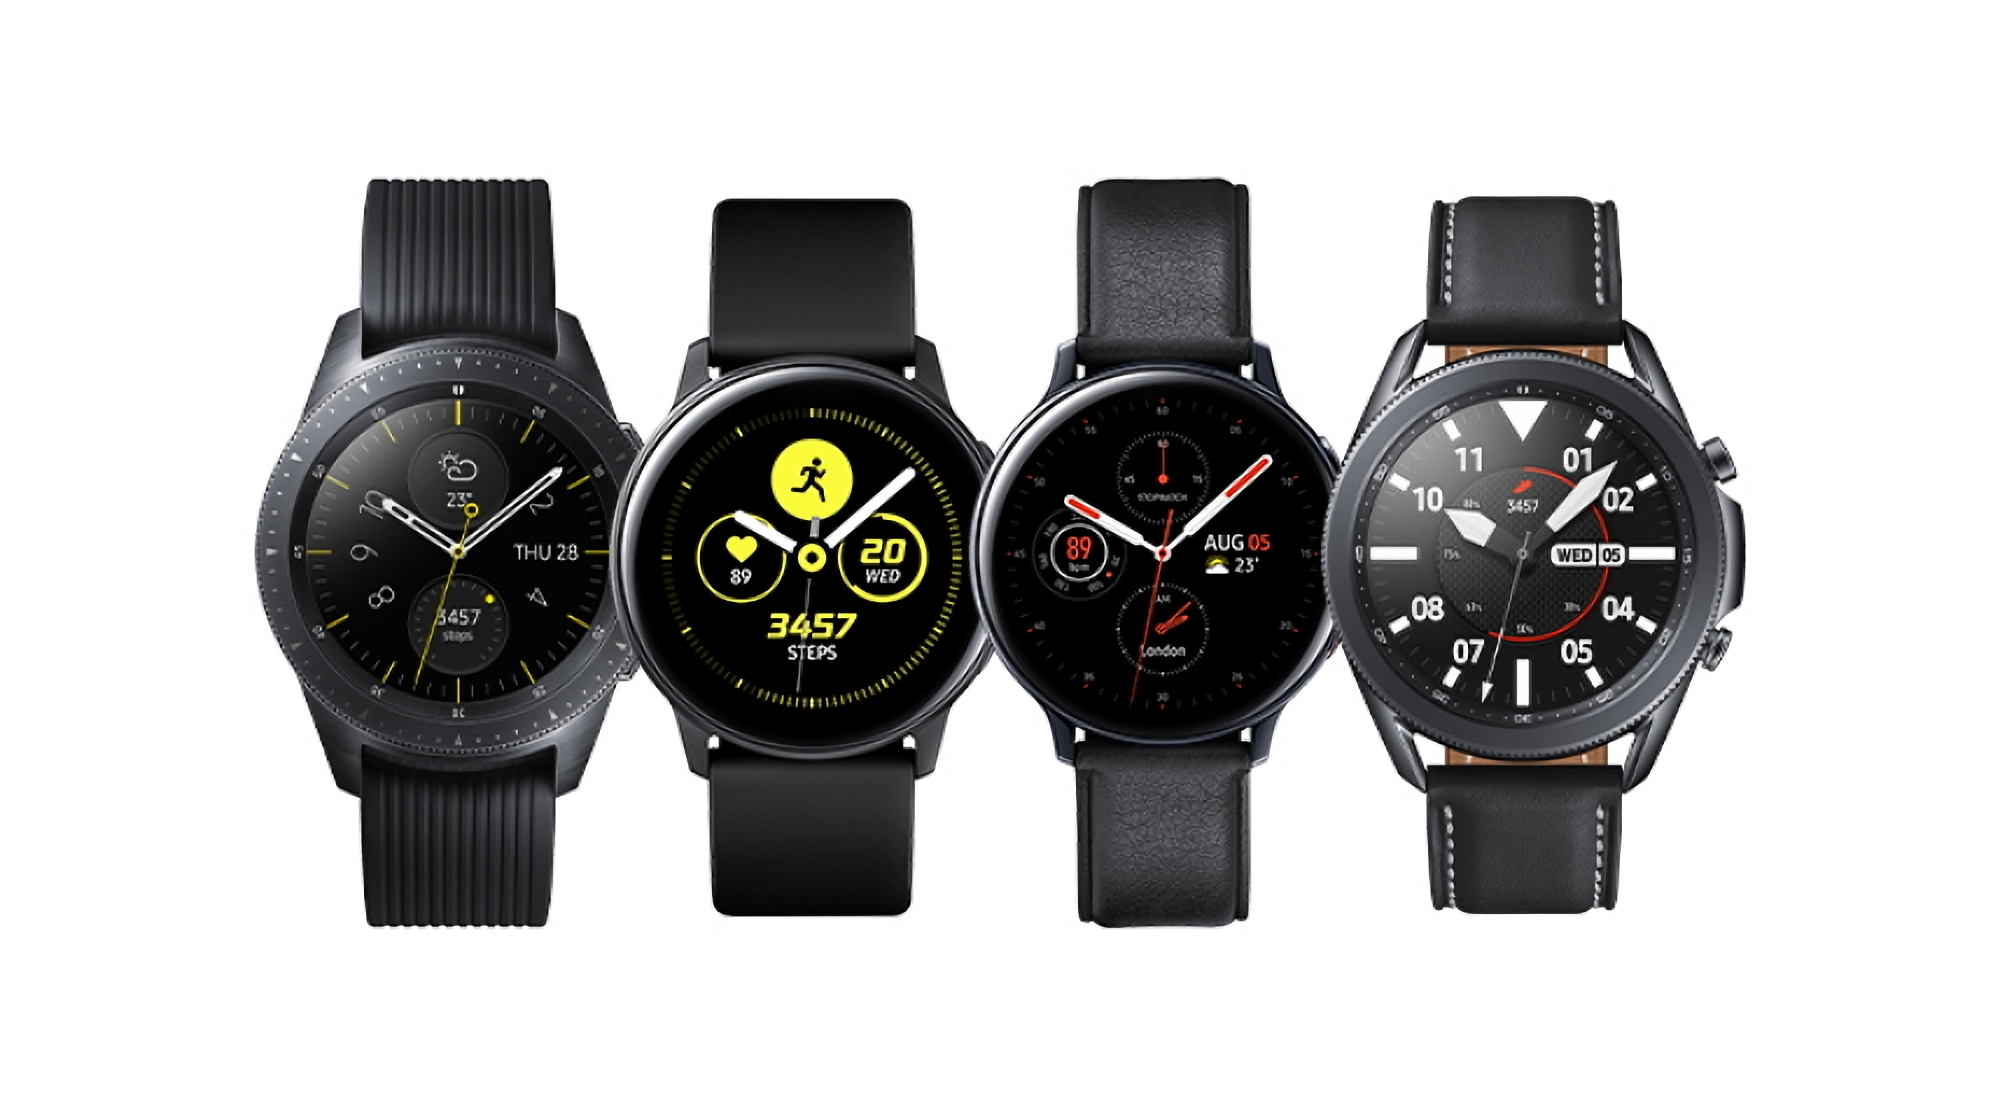 Les montres intelligentes originales Samsung Galaxy Watch et Galaxy Watch Active commencent à recevoir une nouvelle mise à jour logicielle